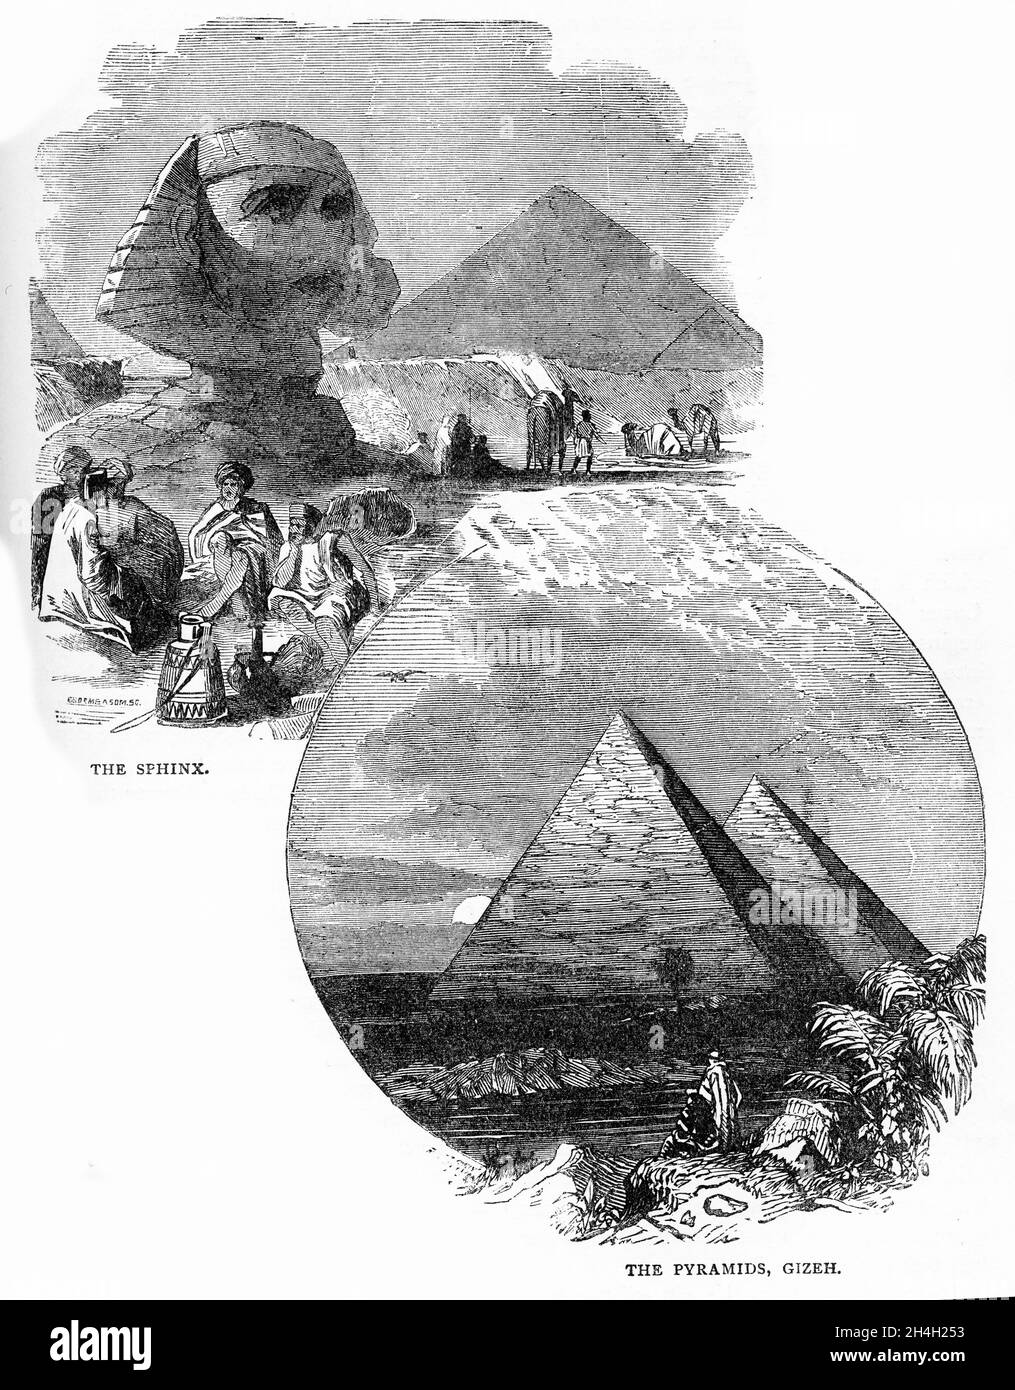 Stich der Sphinx und der Pyramiden in Ägypten, aus einer Publikation um 1880 Stockfoto